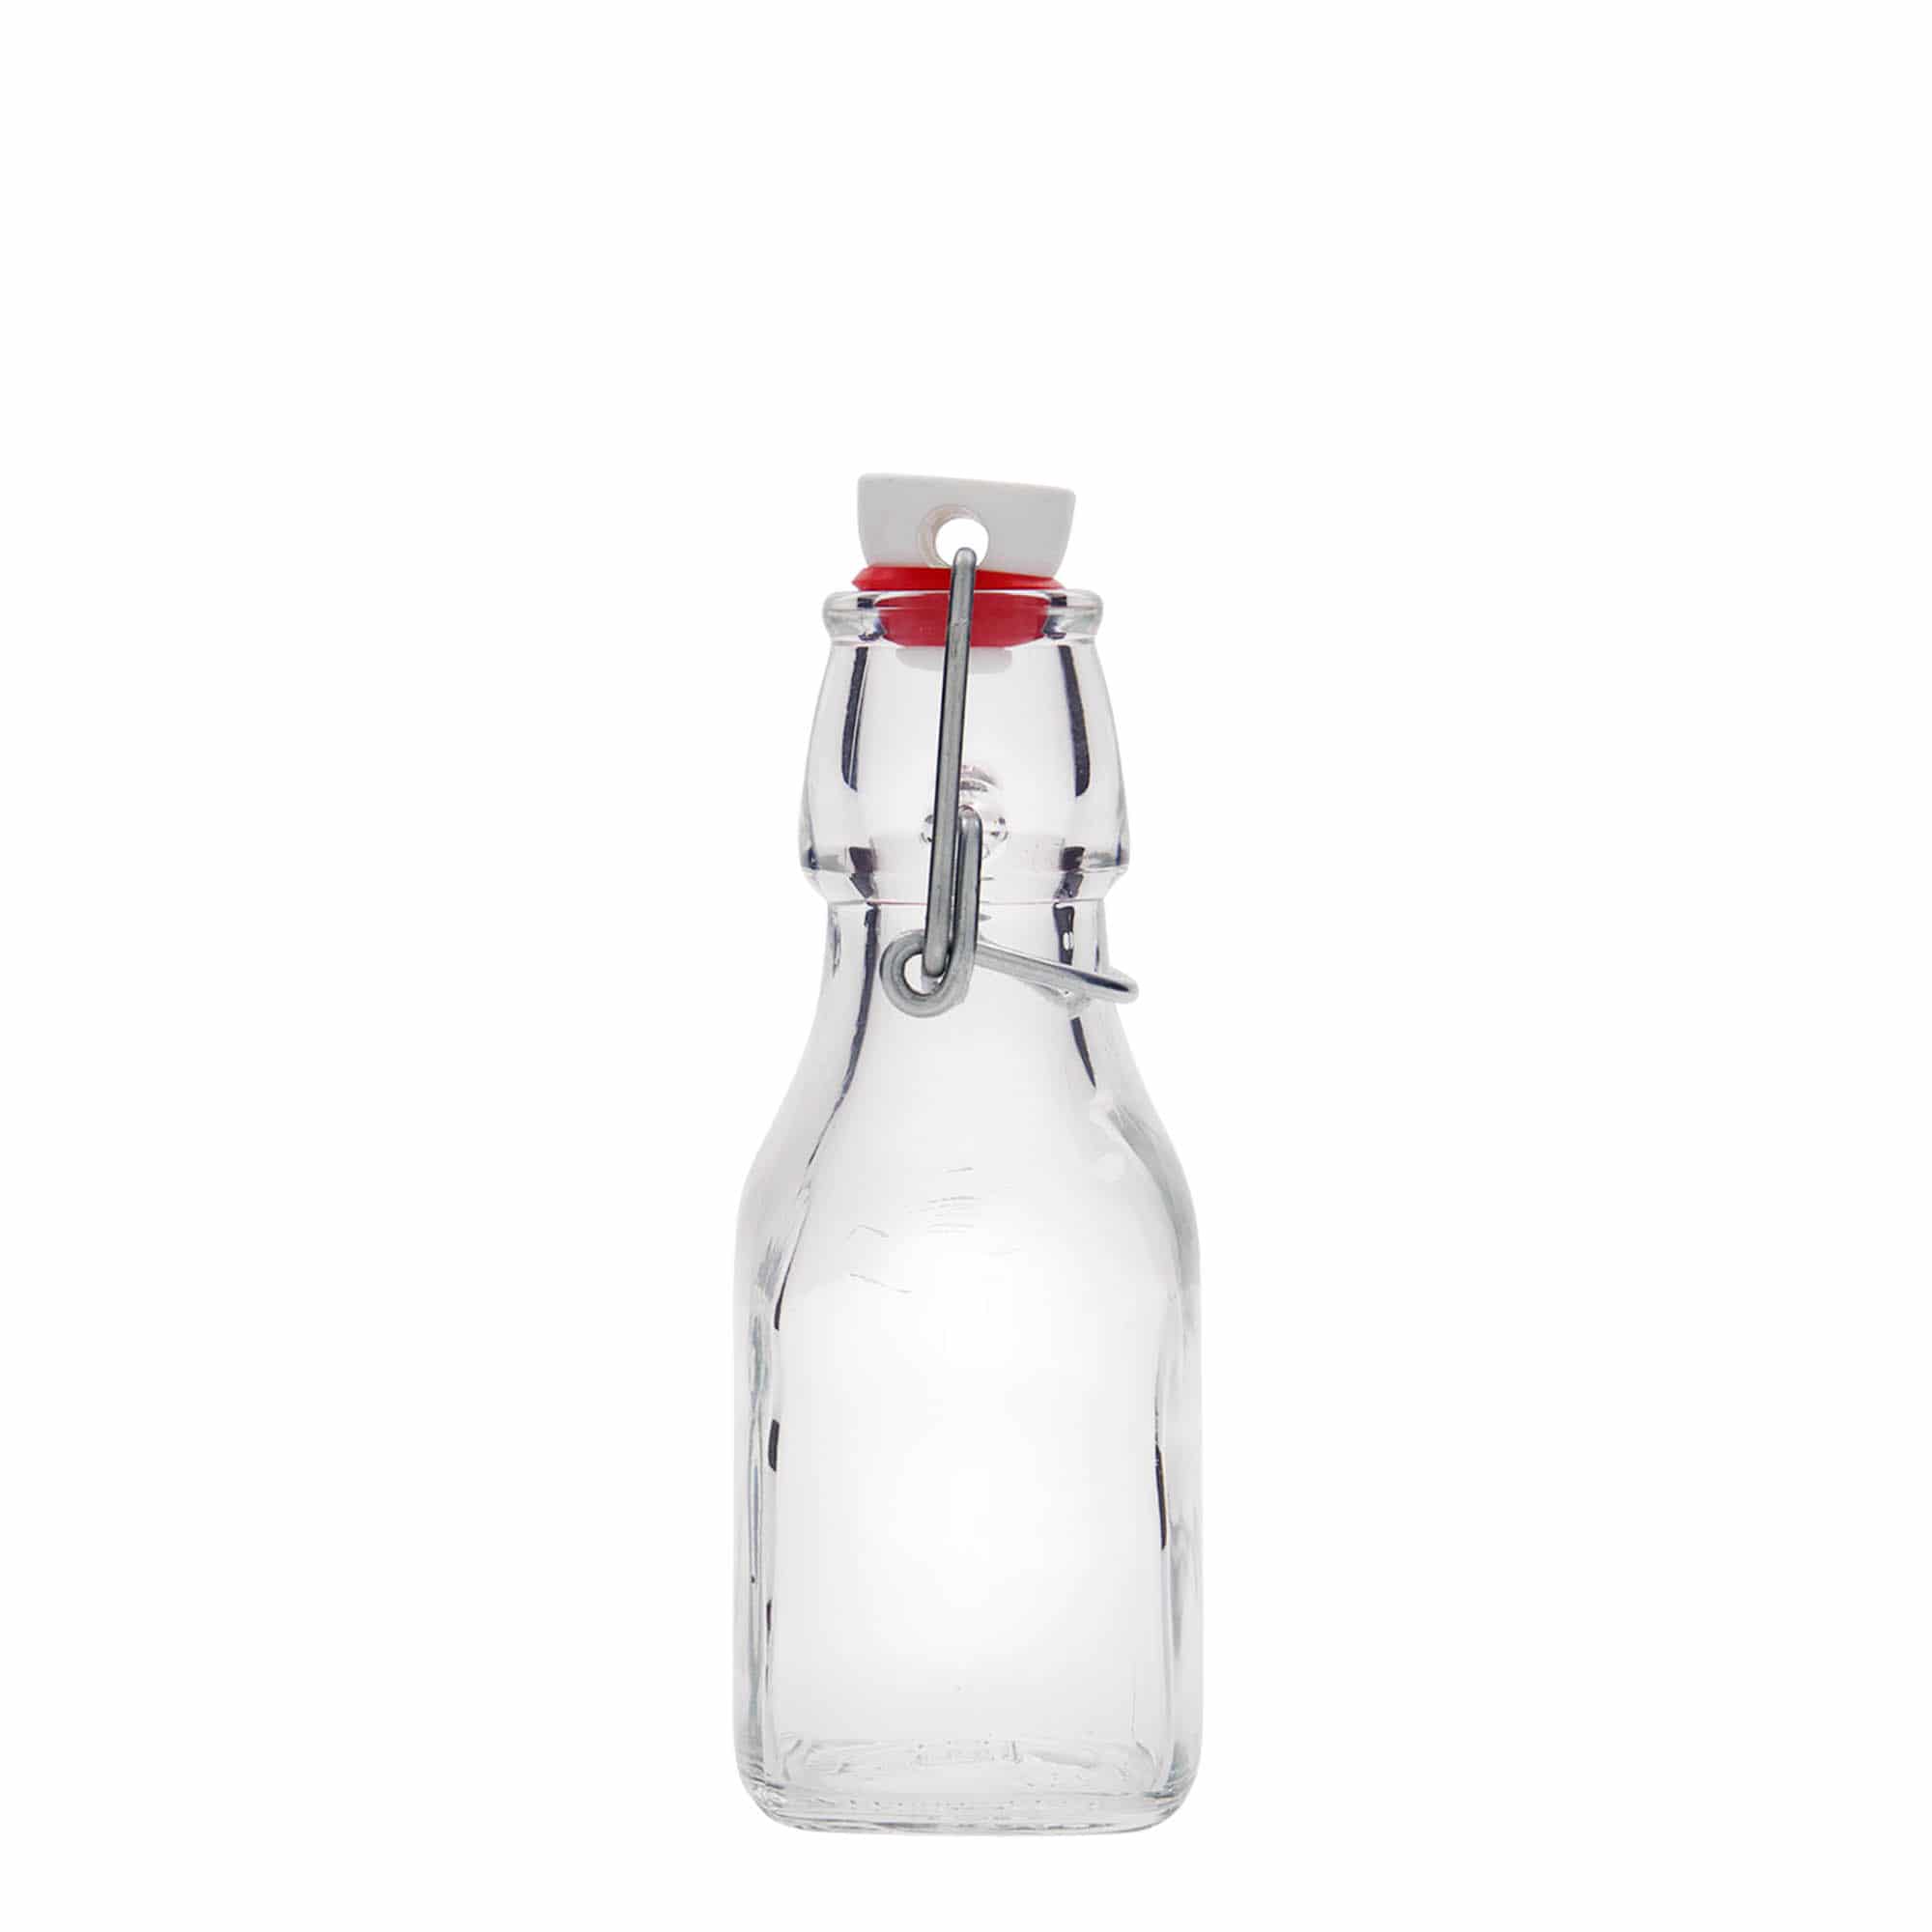 125 ml-es üvegpalack 'Swing', négyzet alakú, szájnyílás: csatos zár